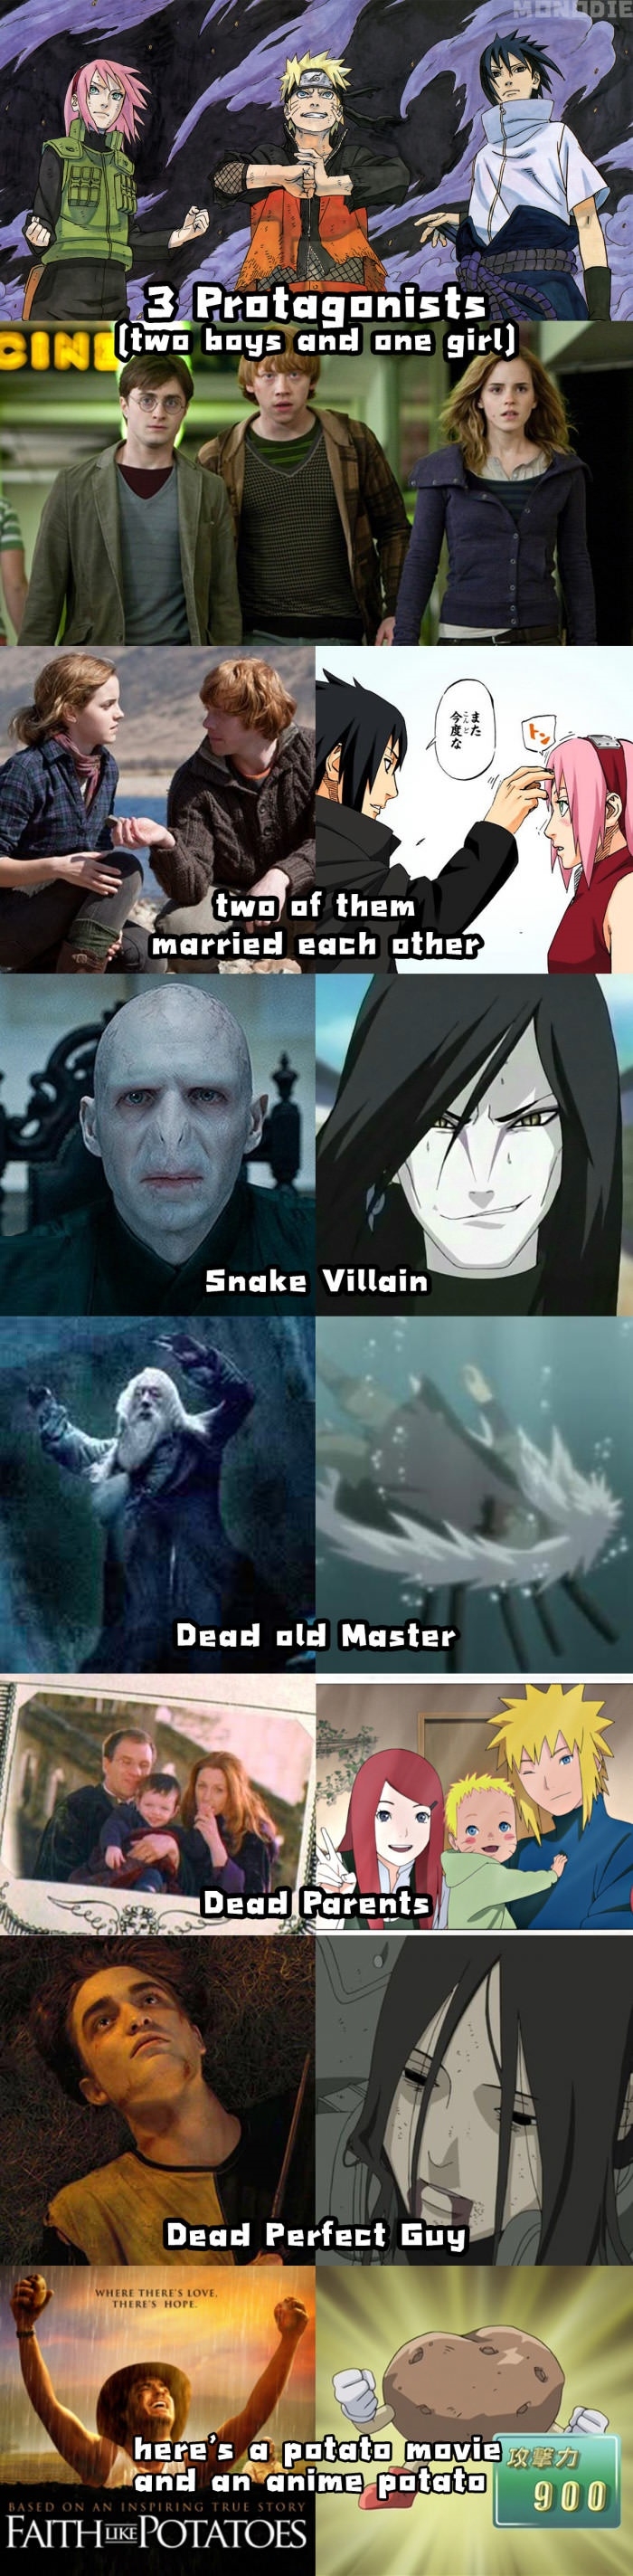 Harry Potter & Naruto similarities